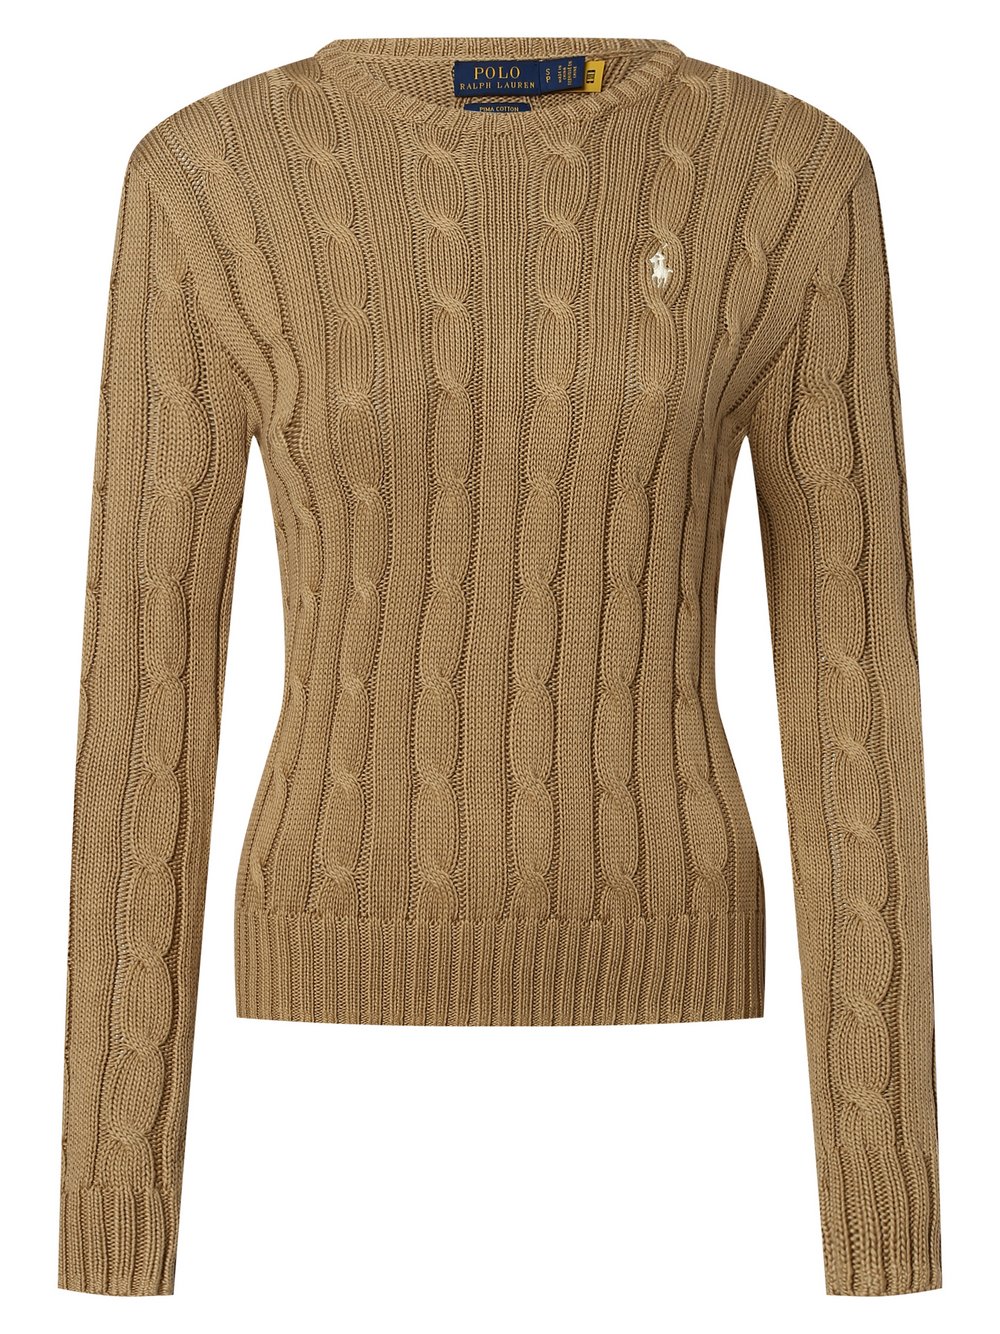 Polo Ralph Lauren - Sweter damski, beżowy|brązowy